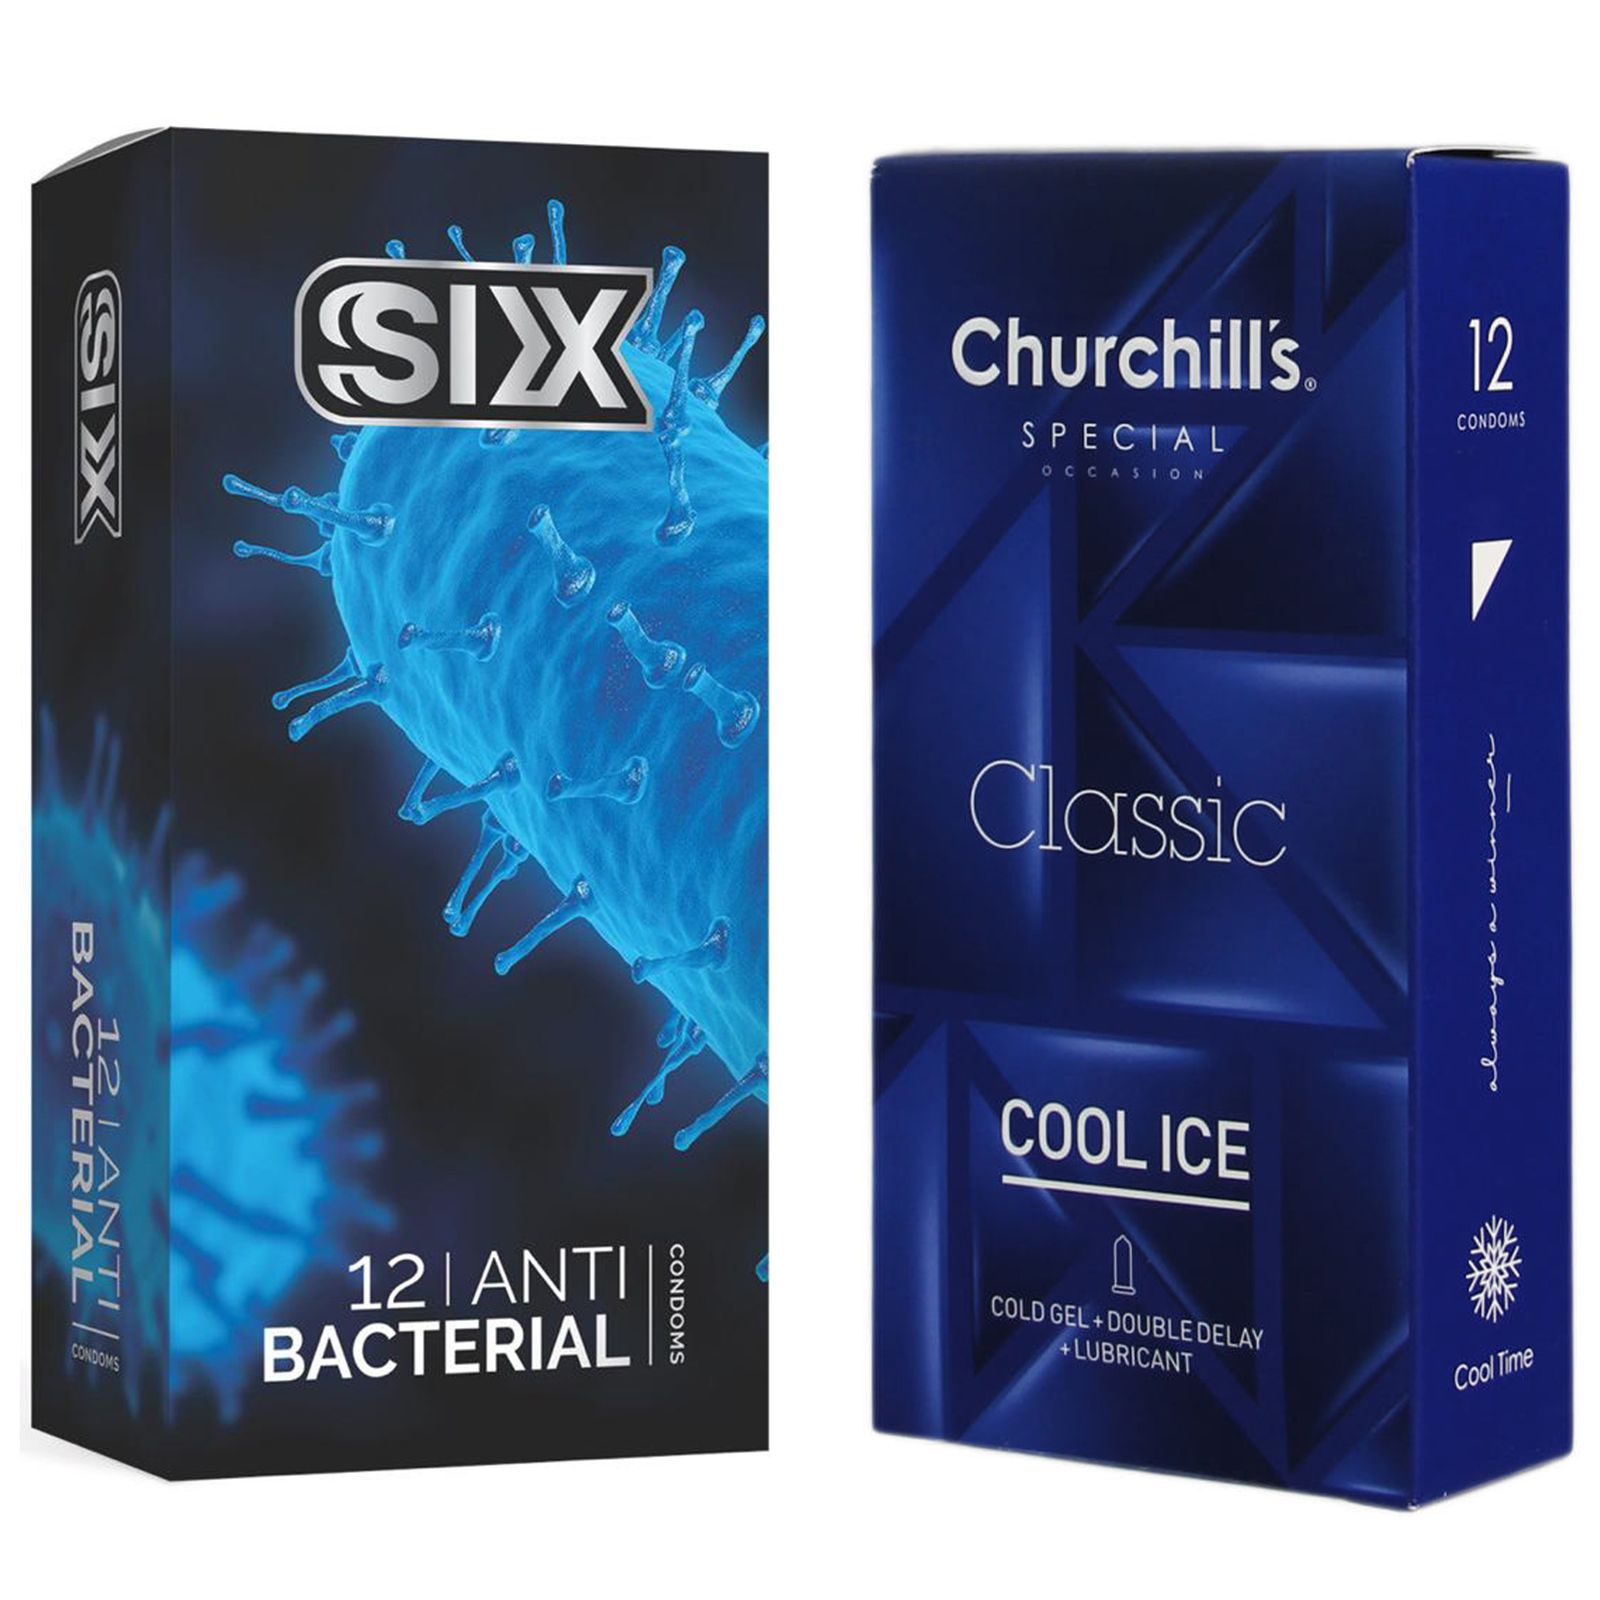 کاندوم چرچیلز مدل Cool Ice بسته 12 عددی به همراه کاندوم سیکس مدل آنتی باکتریال بسته 12 عددی